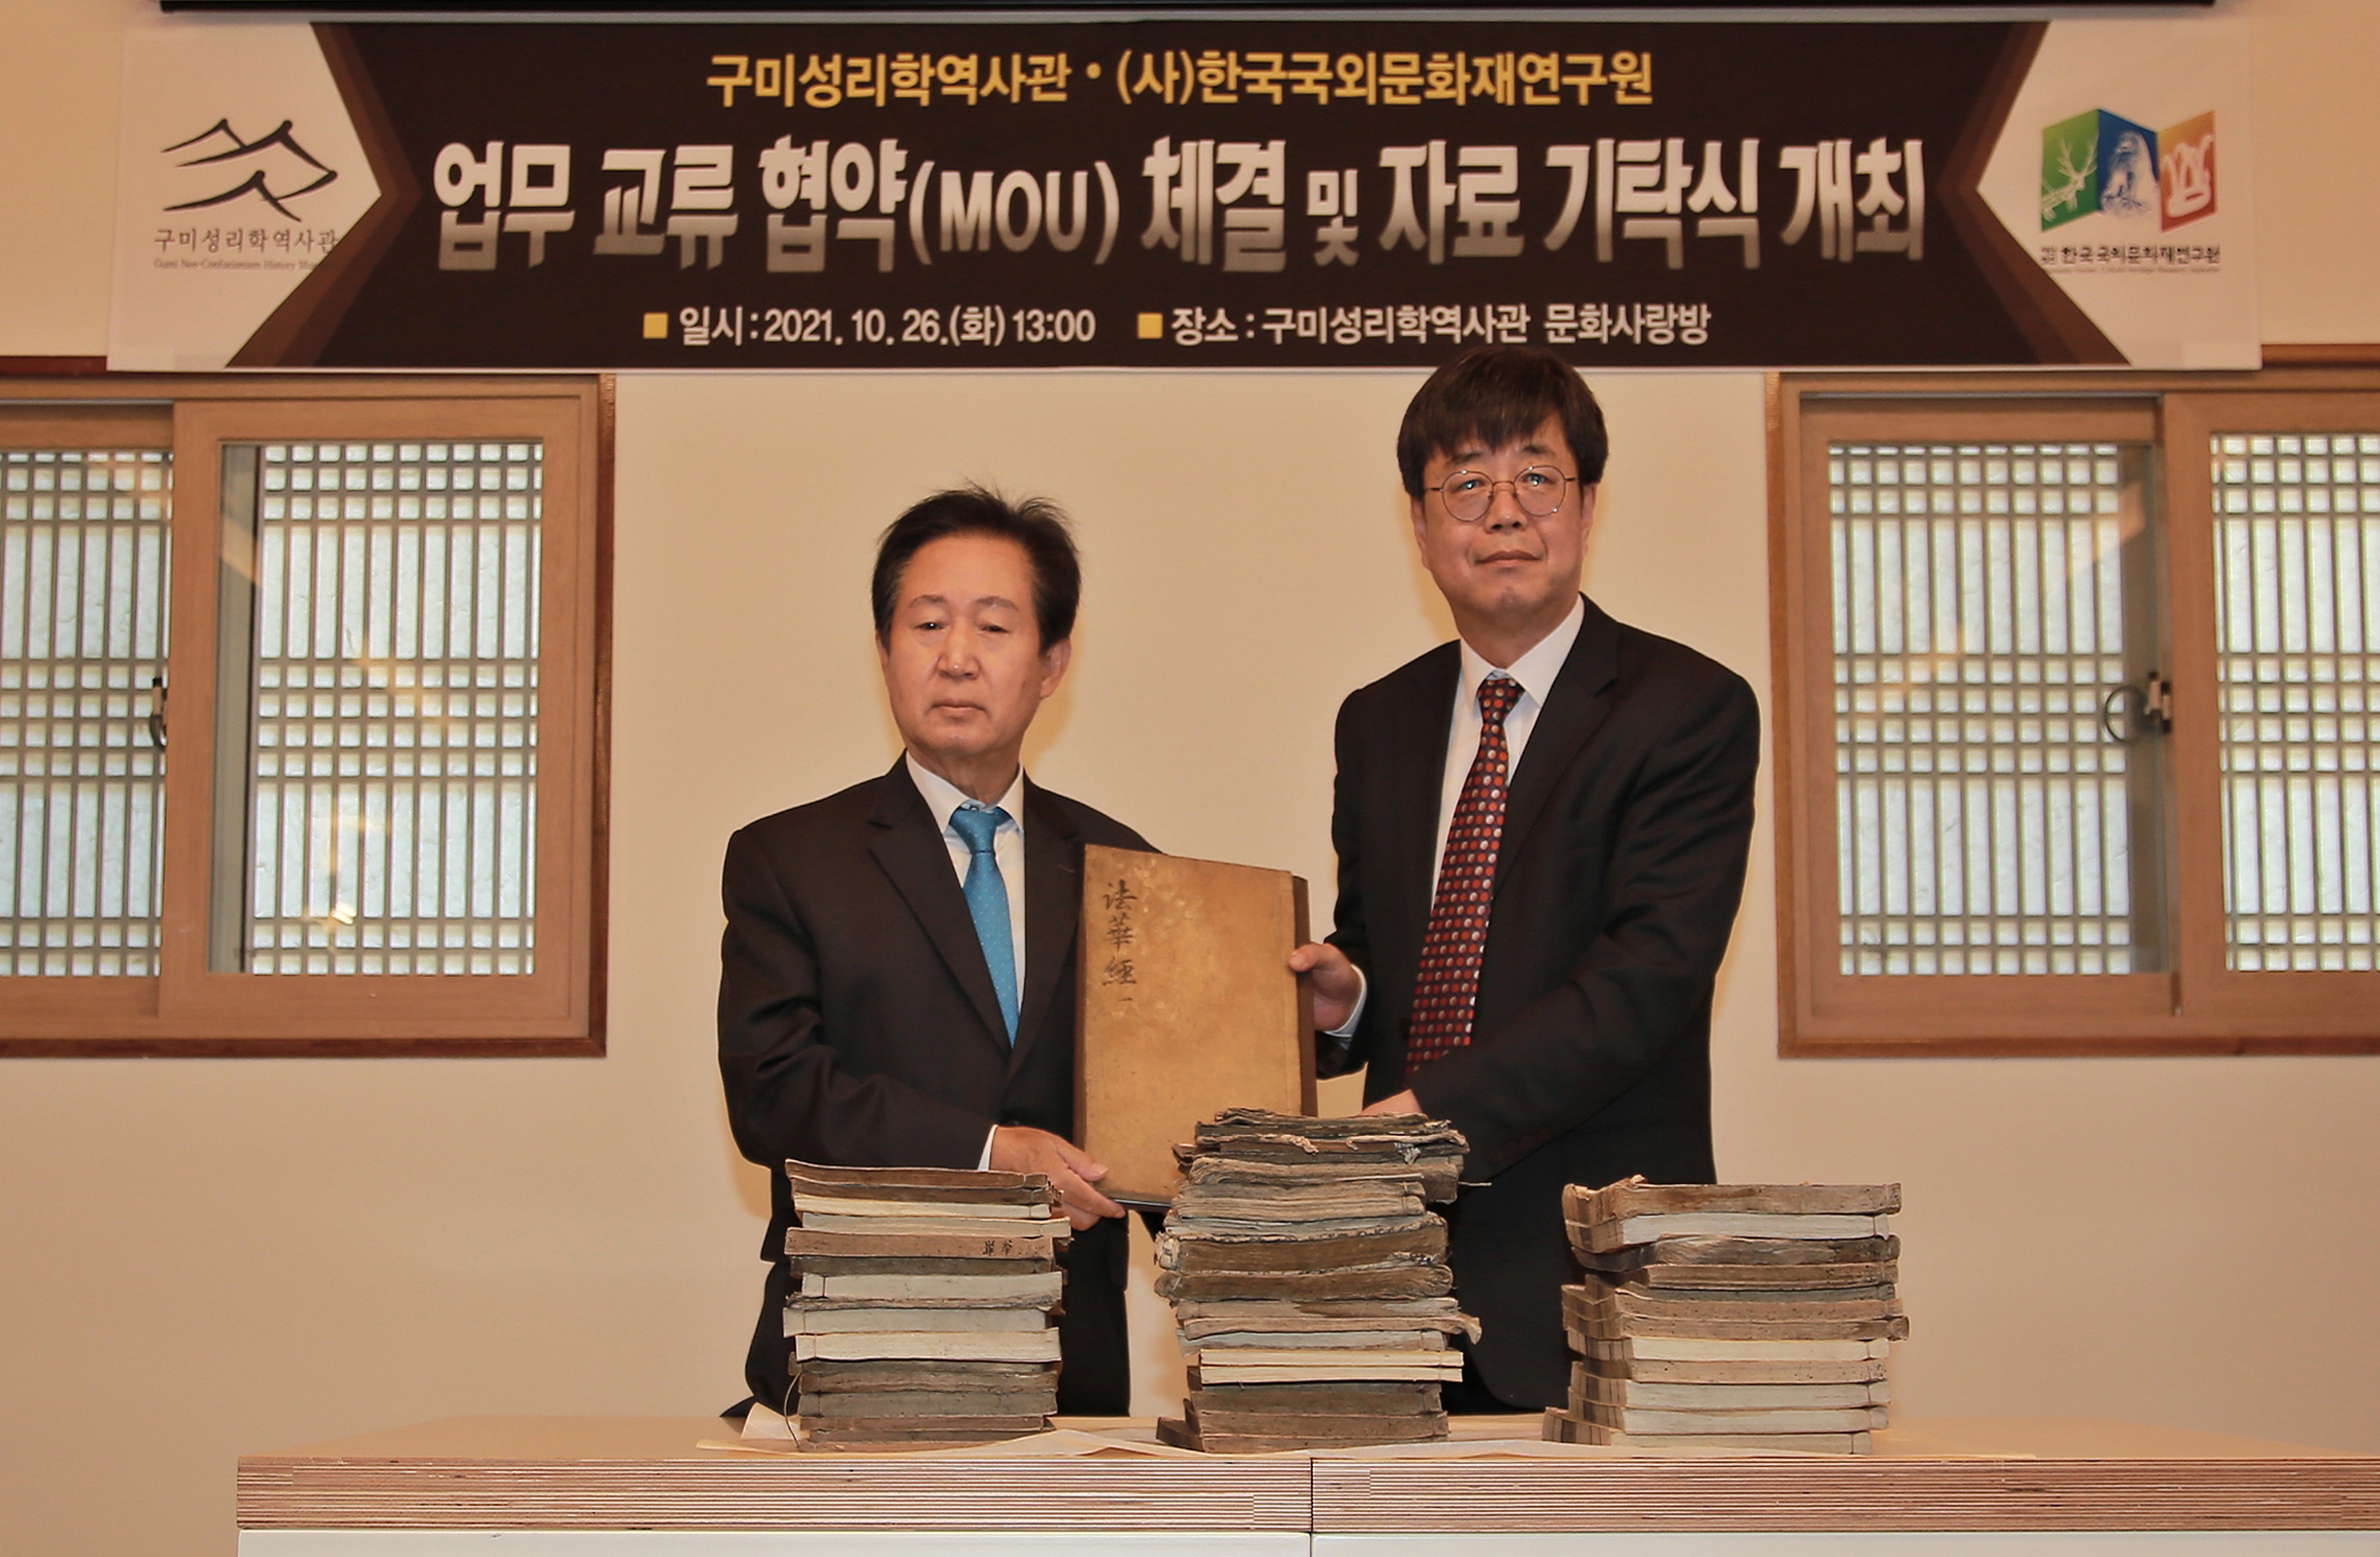 2021.10.26_(사)한국국외문화재연구원과 업무협약 체결, 자료 기탁식 개최 첨부 이미지